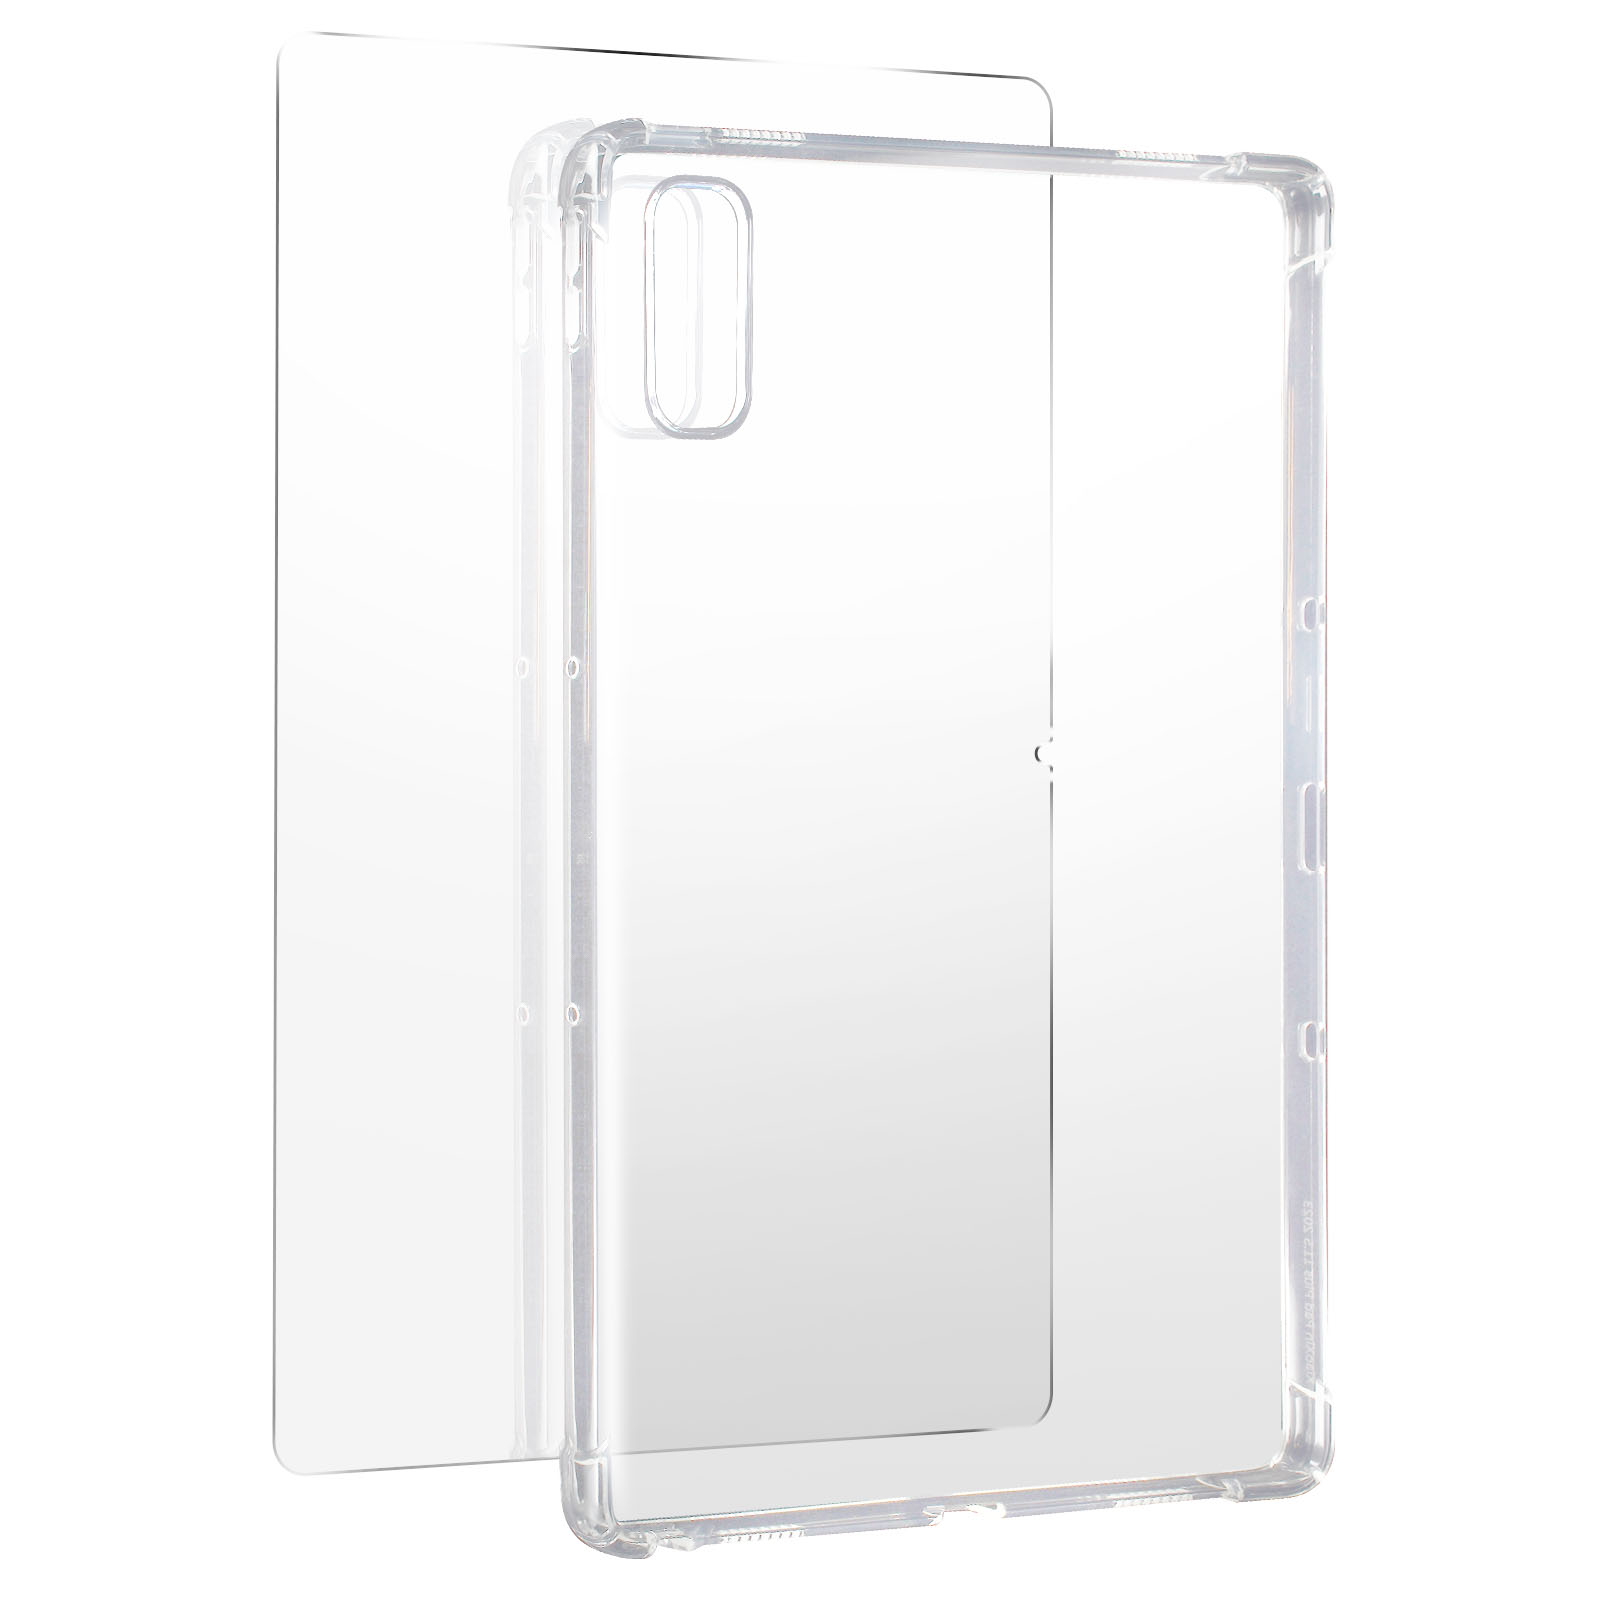 AVIZAR Premium Schutz-Set: Backcover Transparent + Silikongel für Folie Hülle Lenovo Glas, Schutz-Sets Series Gehärtetes und